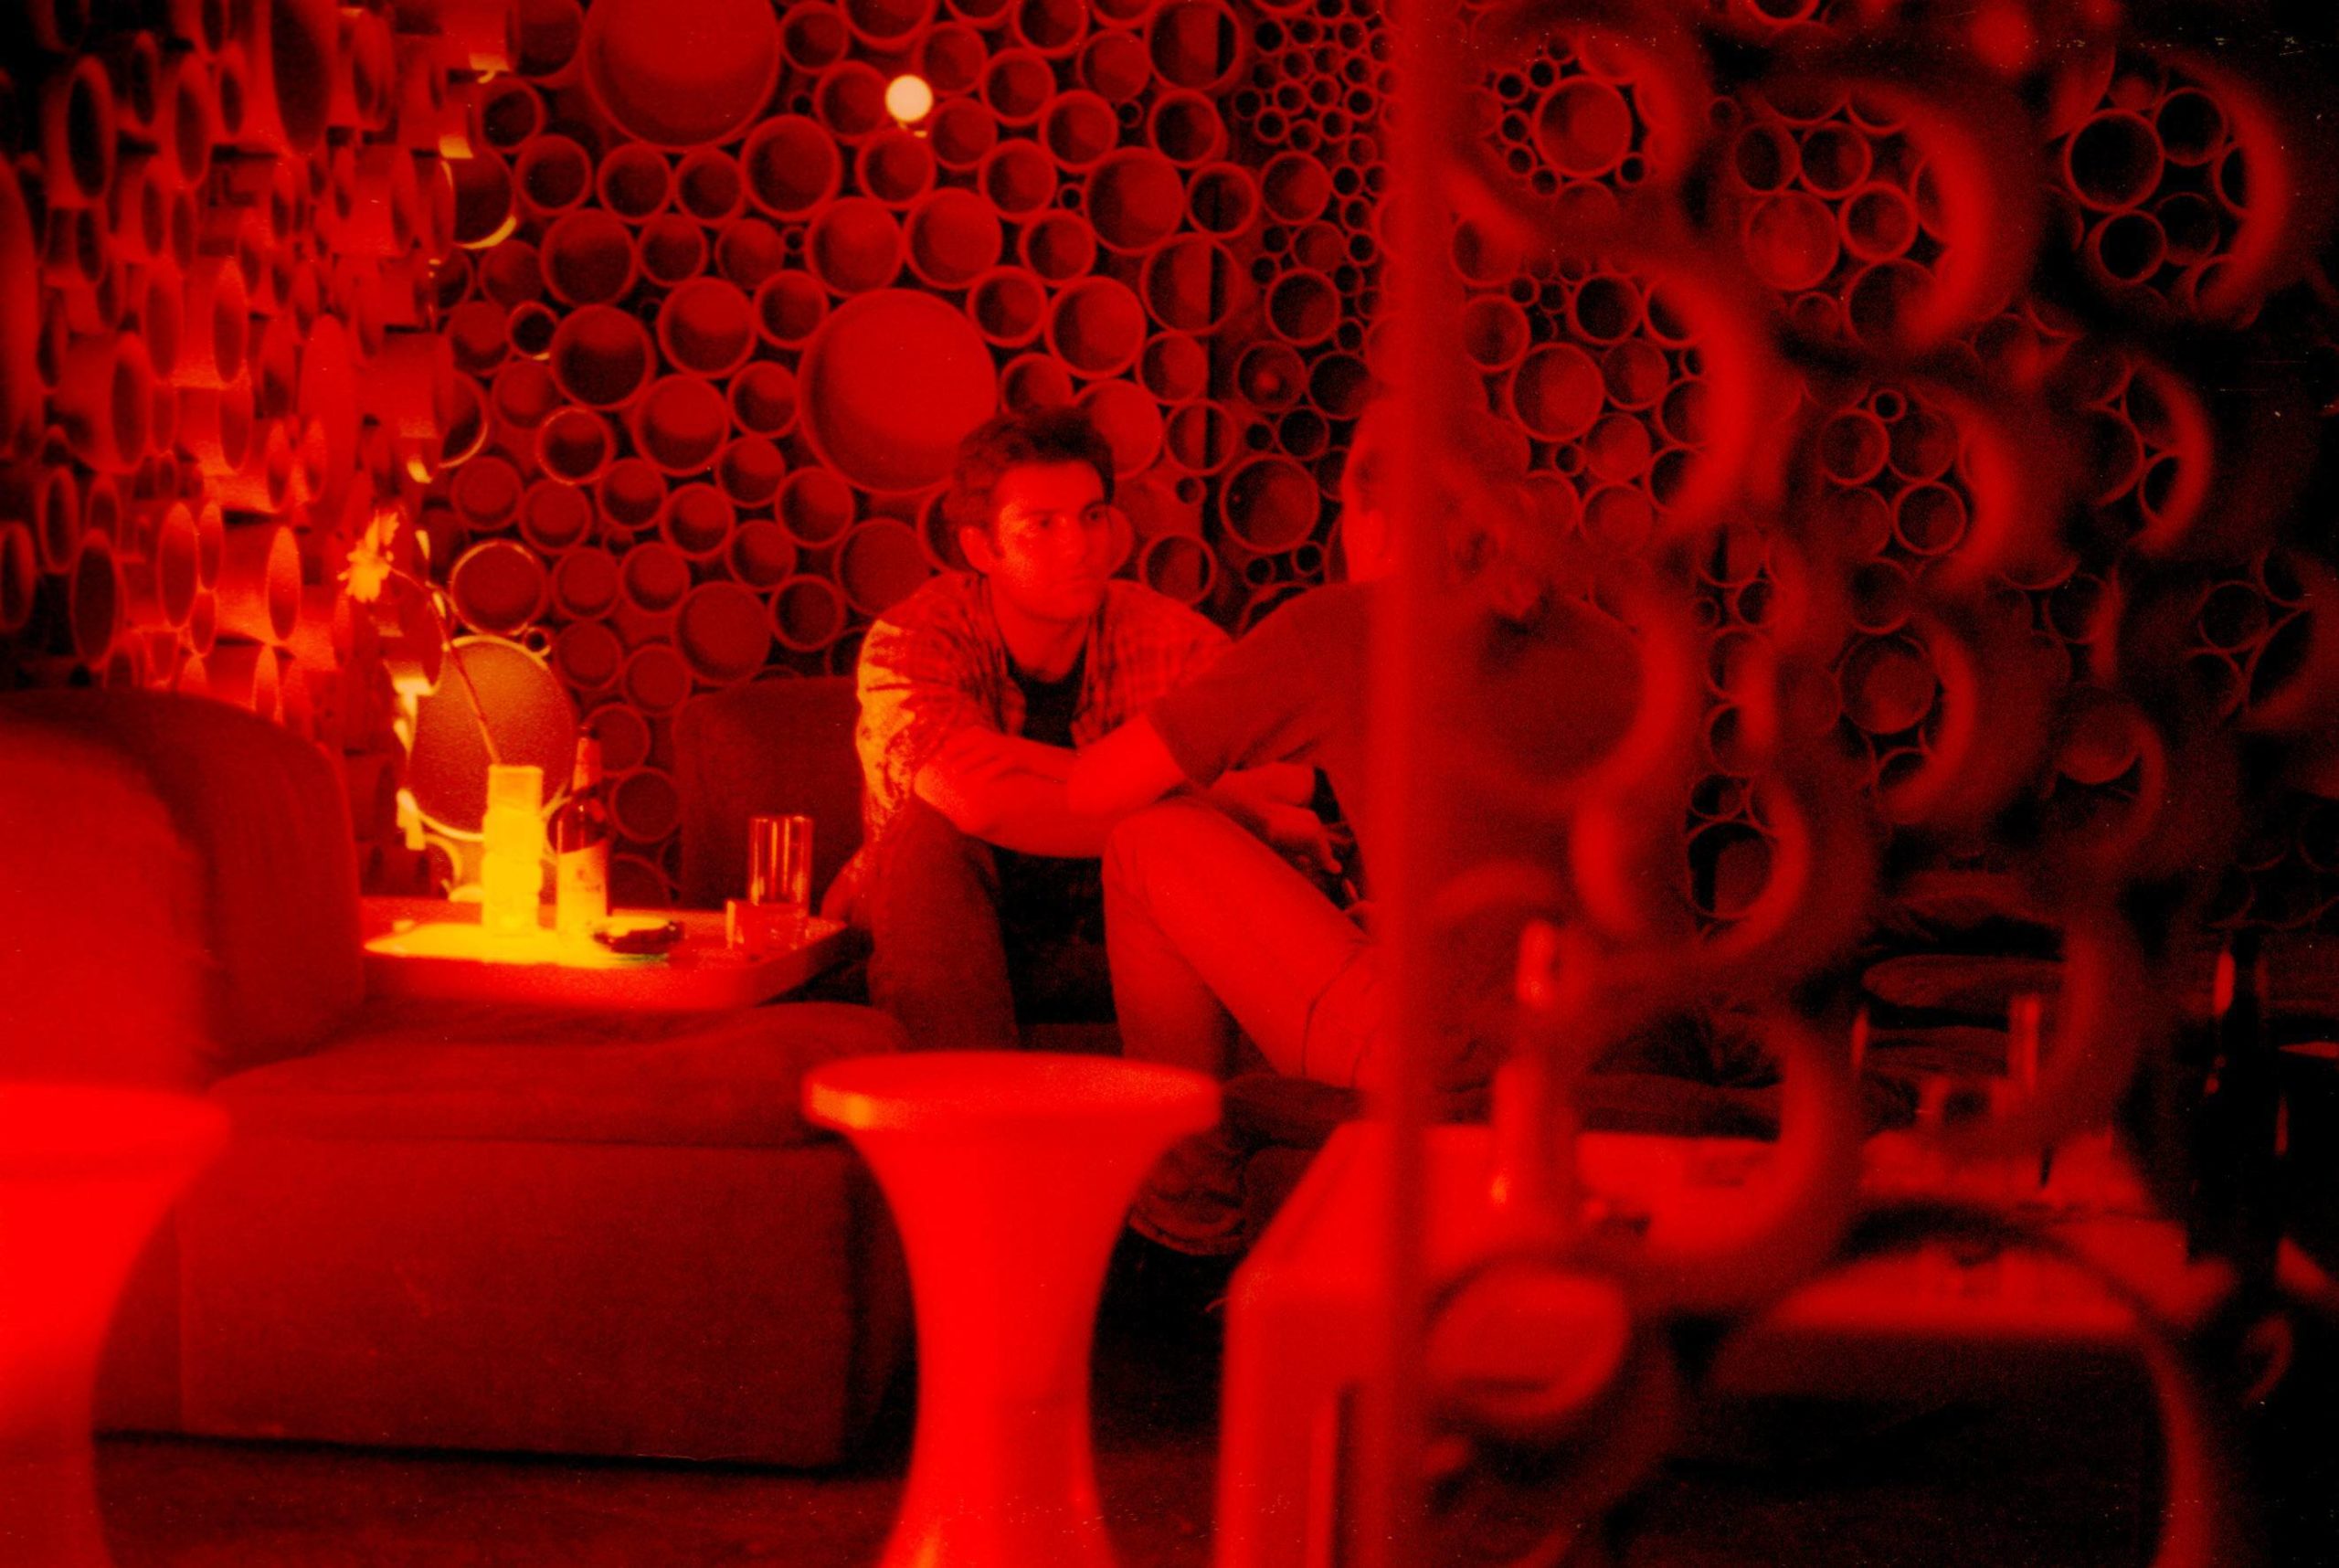 Das Habermeyer in Friedrichshain, eine Bar in rot und retro, 2001. Foto: Imago/David Heerde